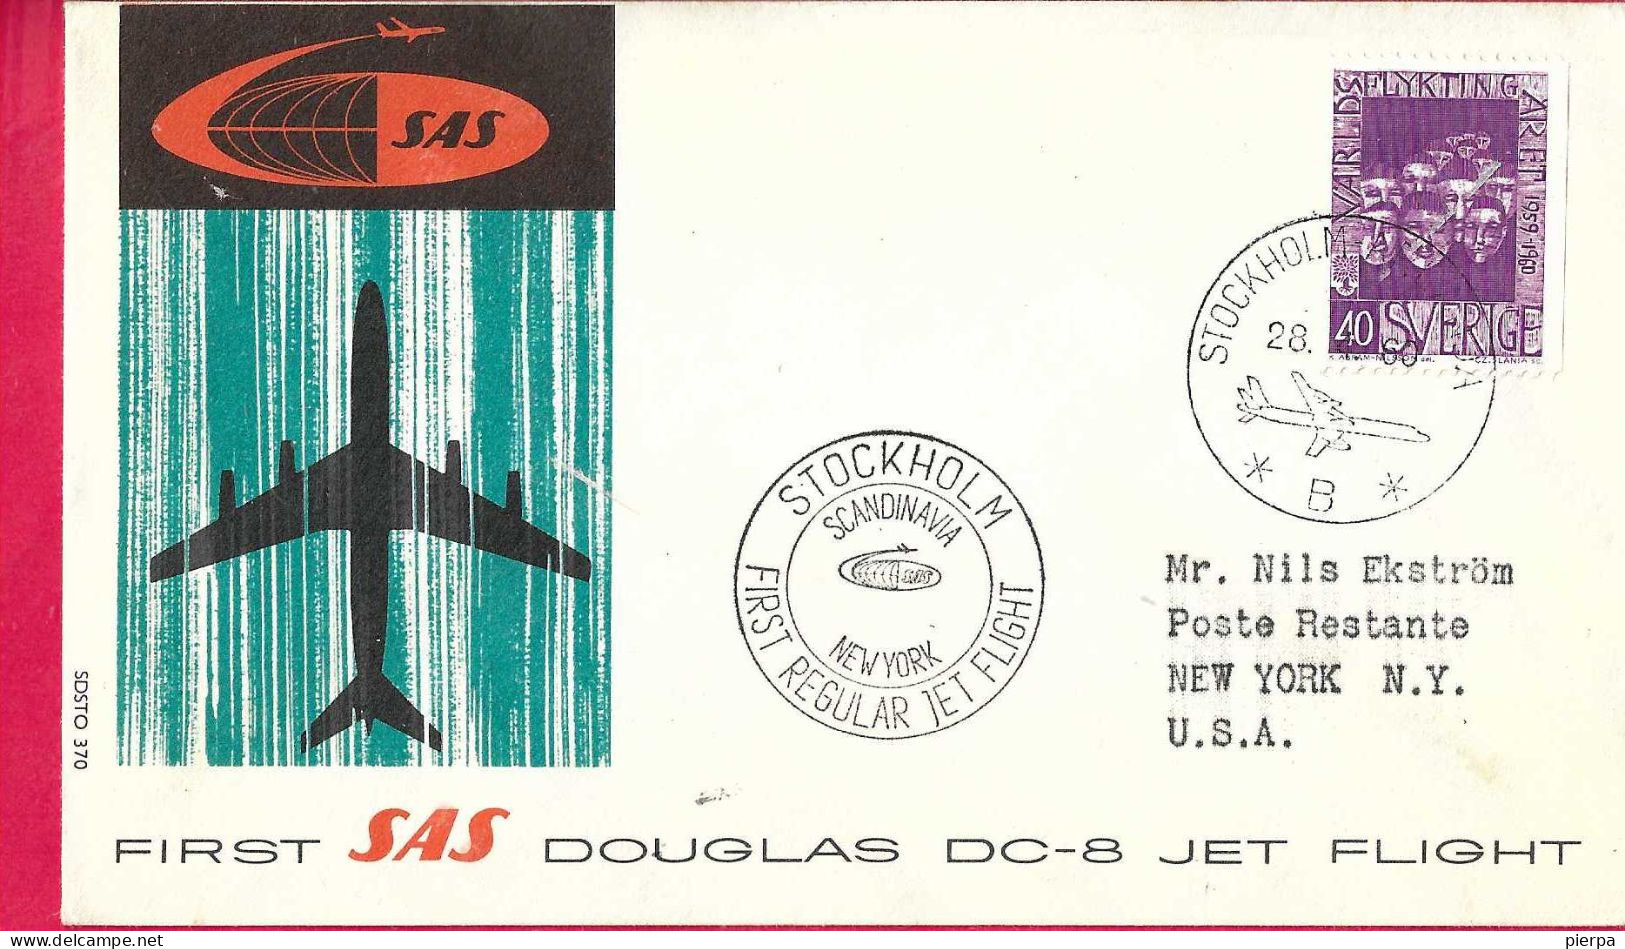 SVERIGE - FIRST DOUGLAS DC-8 FLIGHT - SAS - FROM STOCKHOLM TO NEW YORK *28.4.60* ON OFFICIAL COVER - Cartas & Documentos